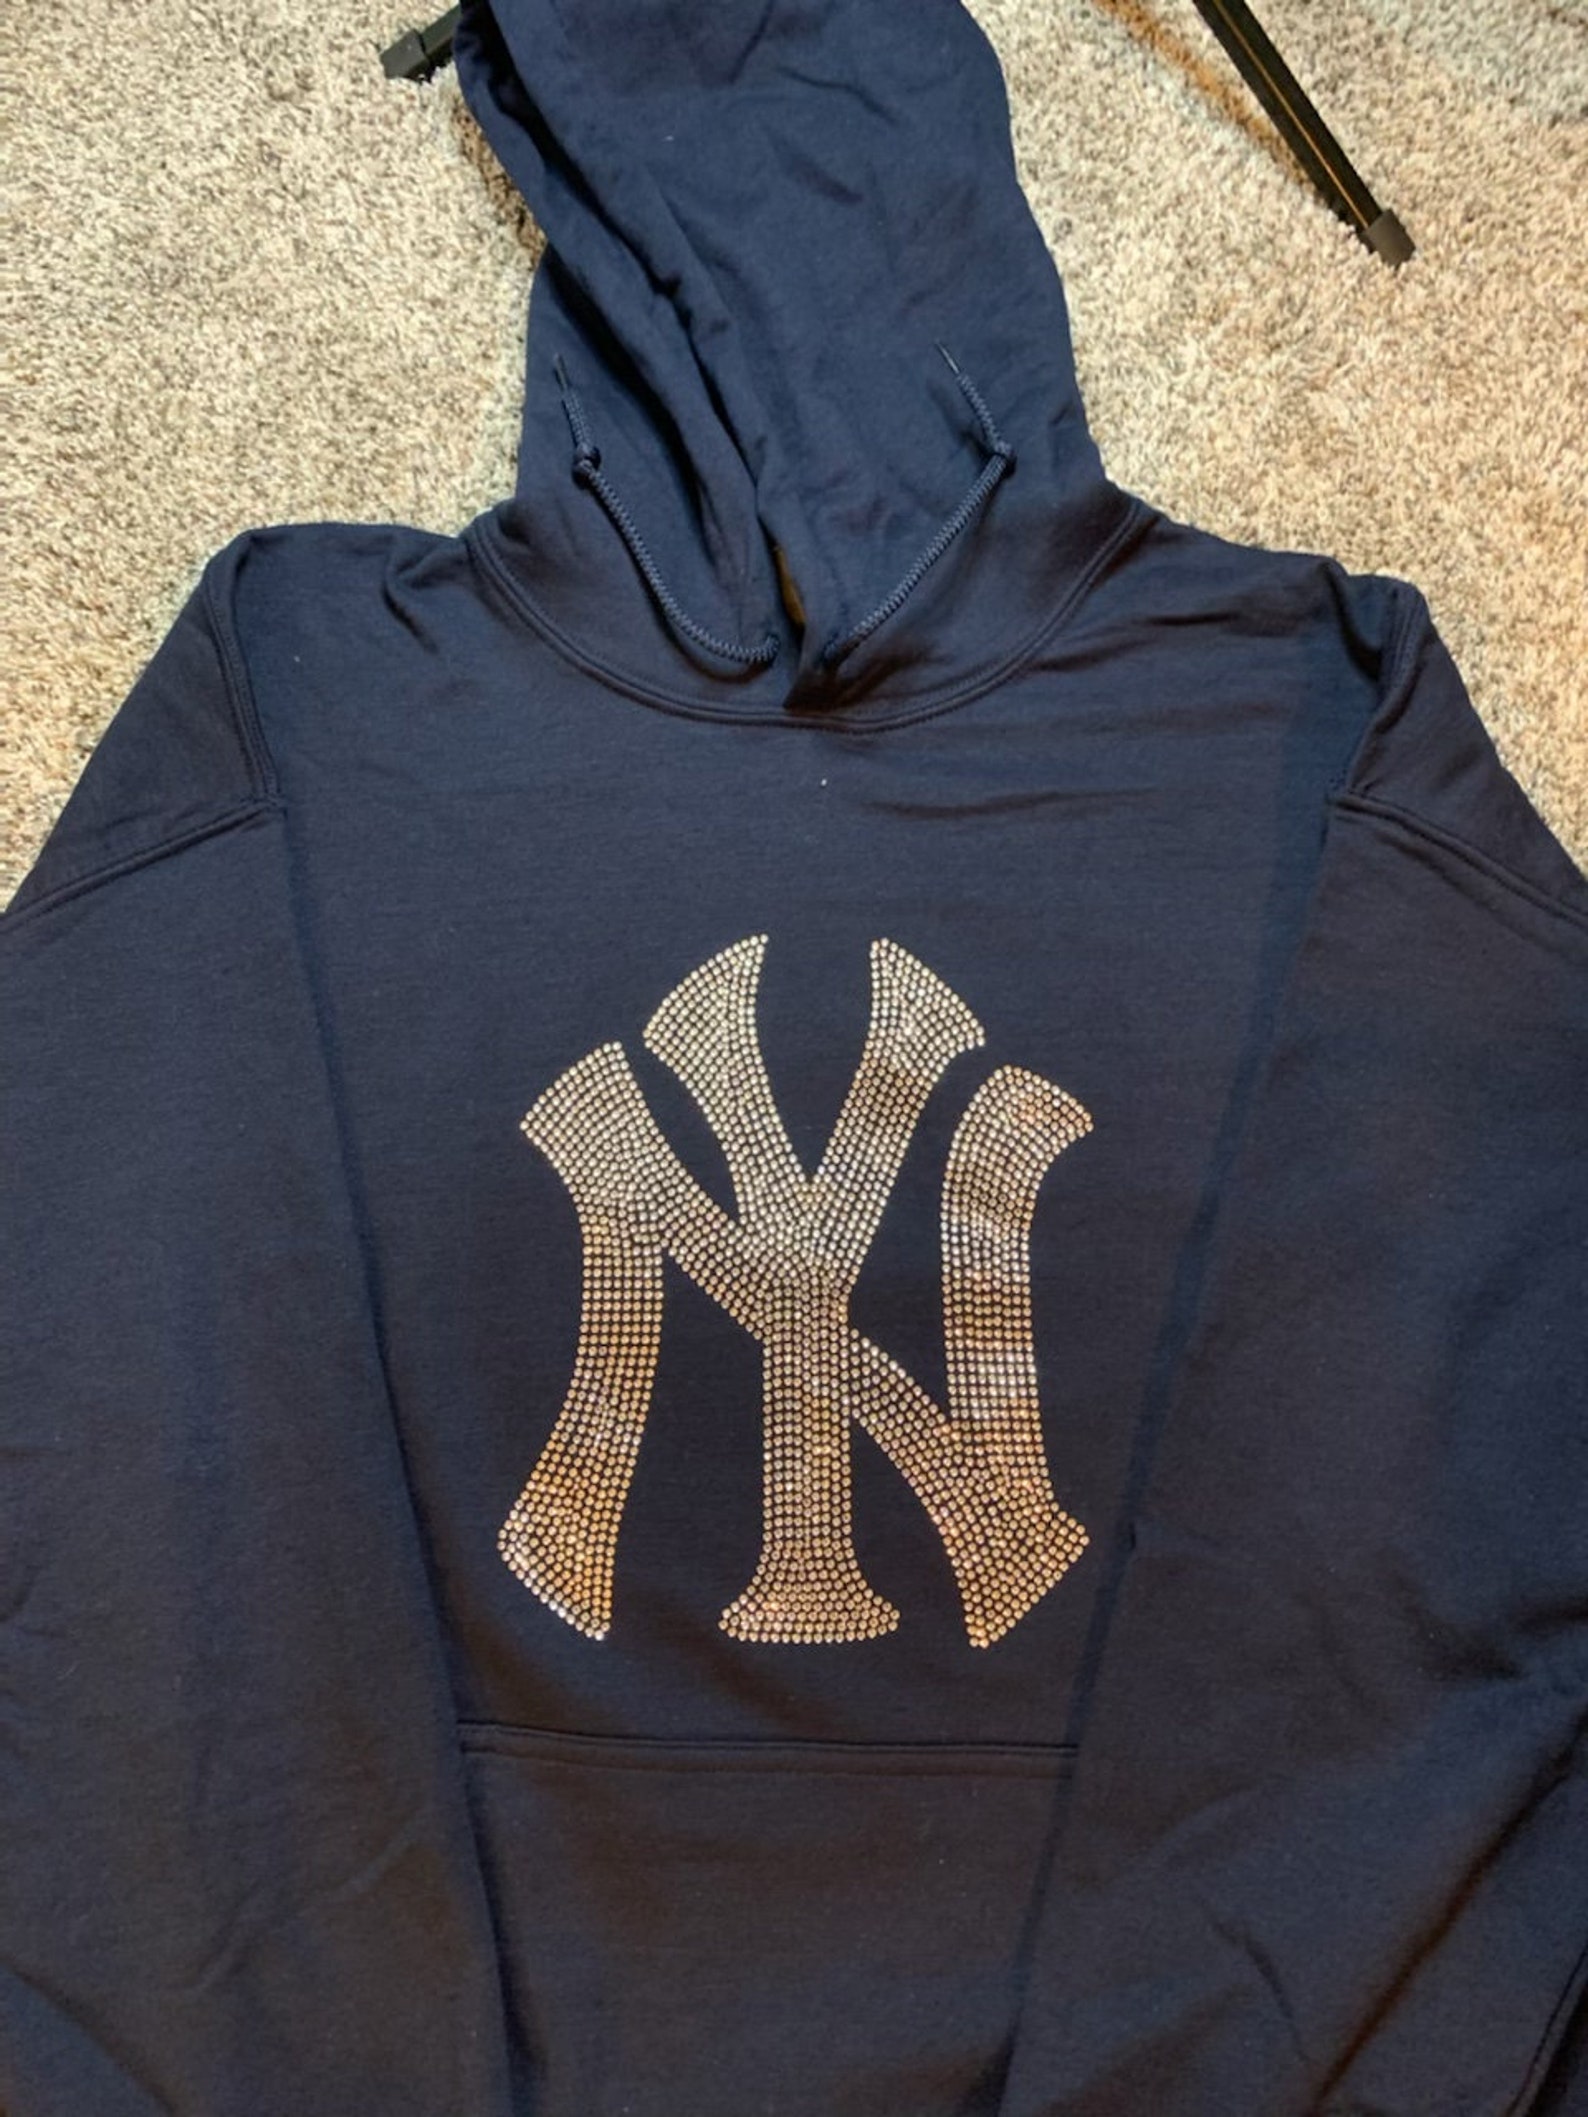 NY Yankees hoodie | Etsy